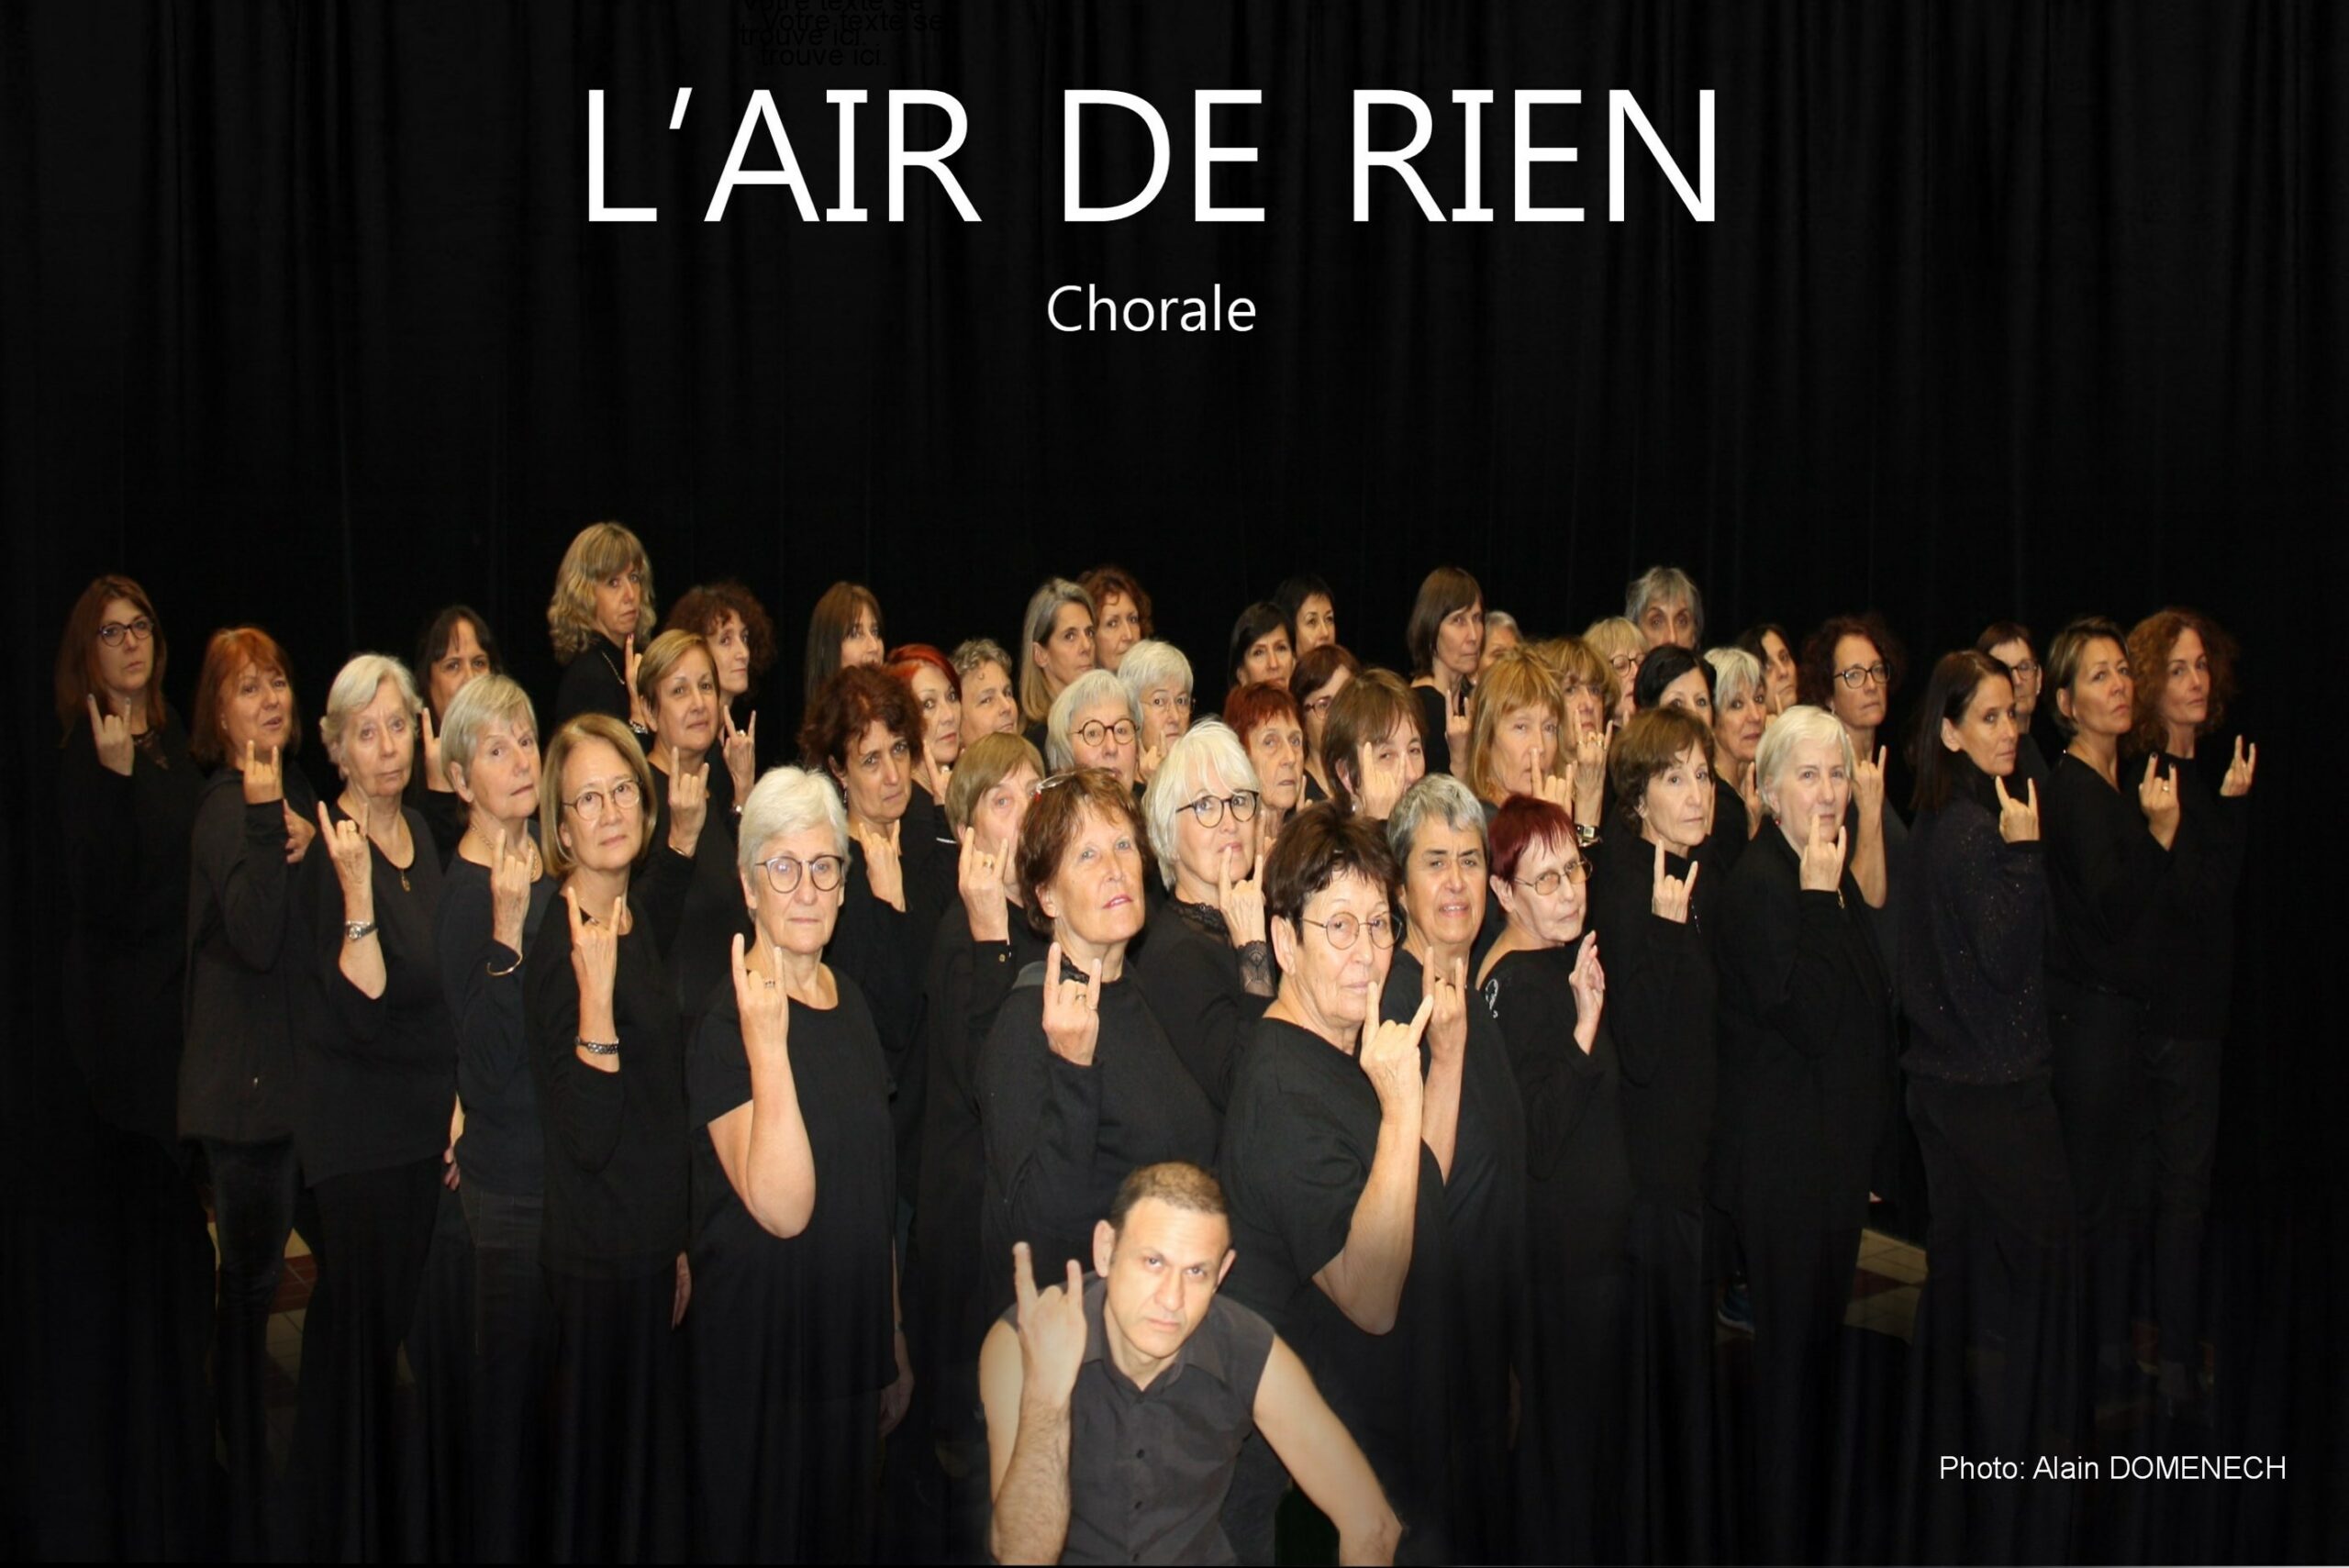 Le Théâtre Benoît XII accueille la Chorale l’Air de rien, pour la présentation du concert « Le Brio », le 14 mai 2022